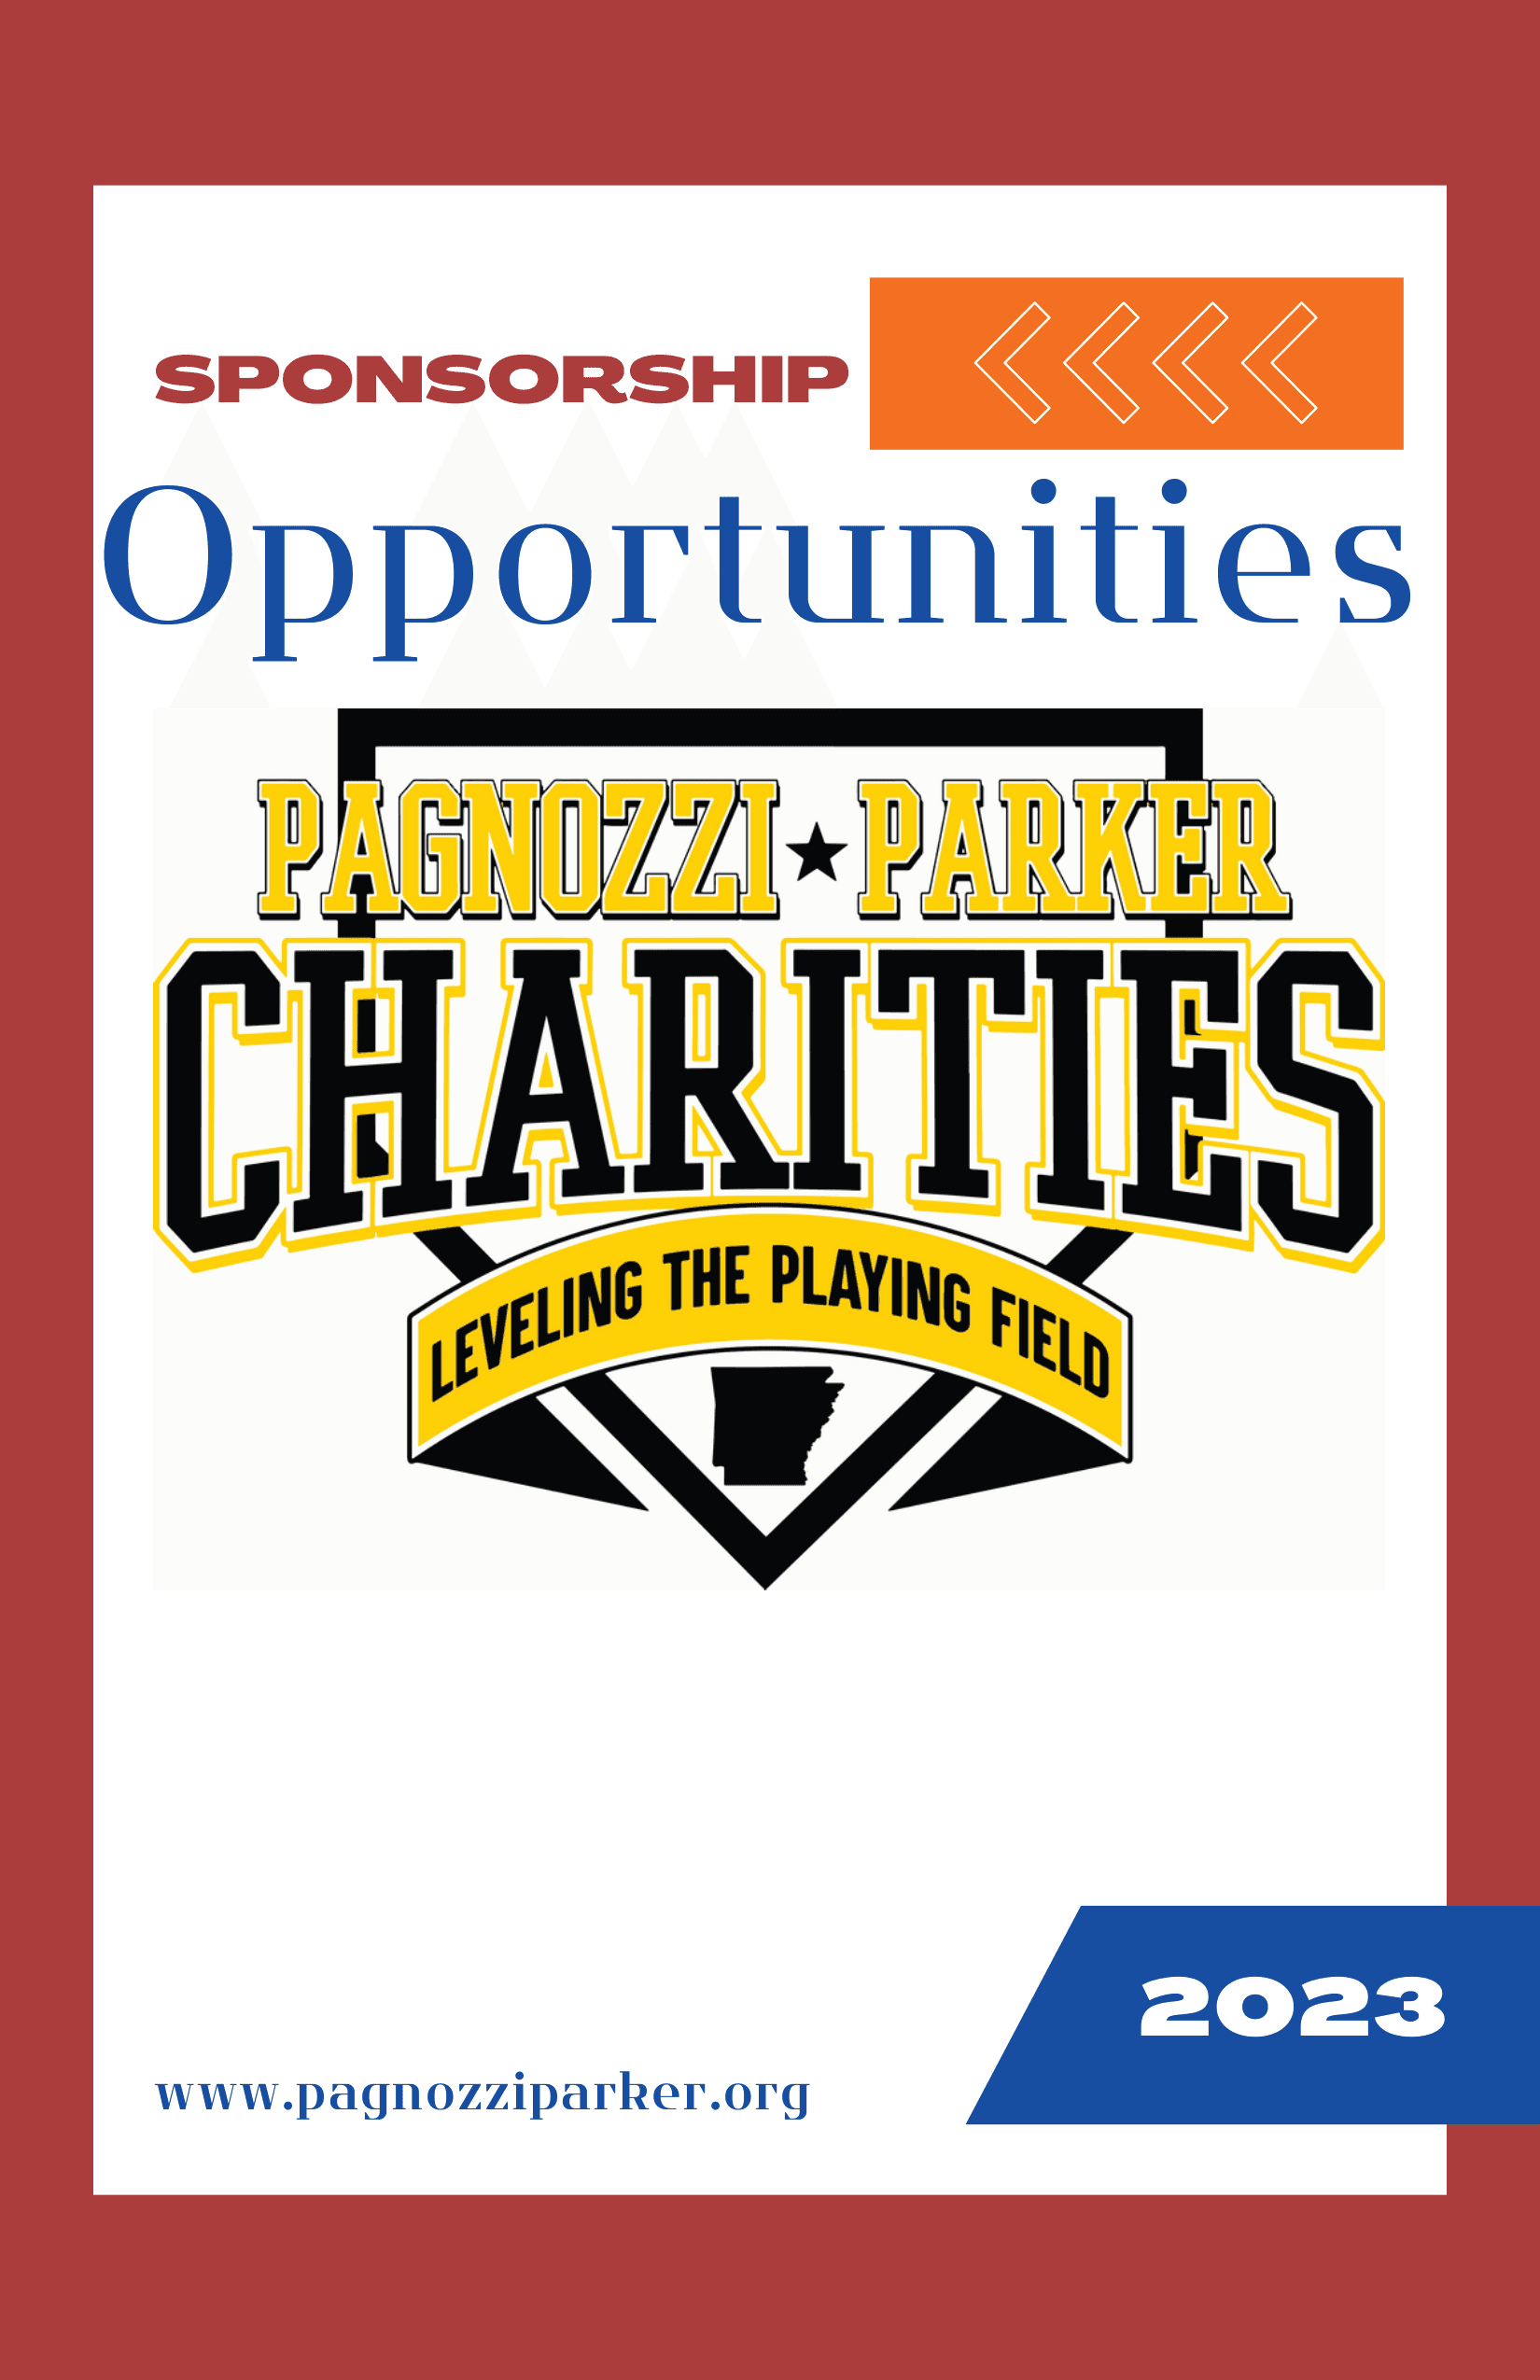 2023 Sponsorship Opportunities